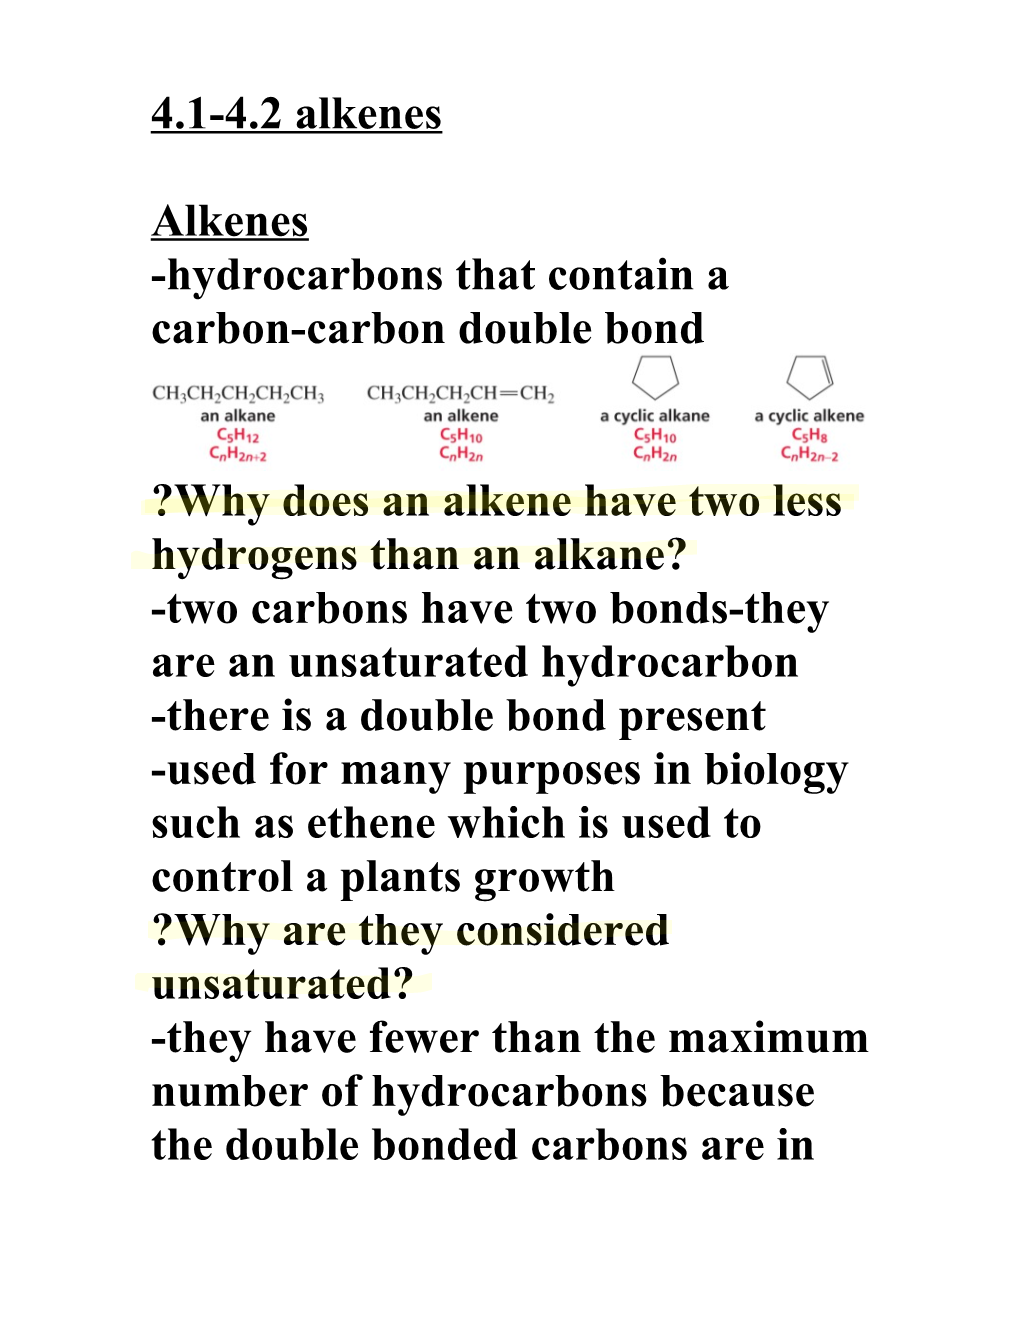 Hydrocarbons That Contain a Carbon-Carbon Double Bond